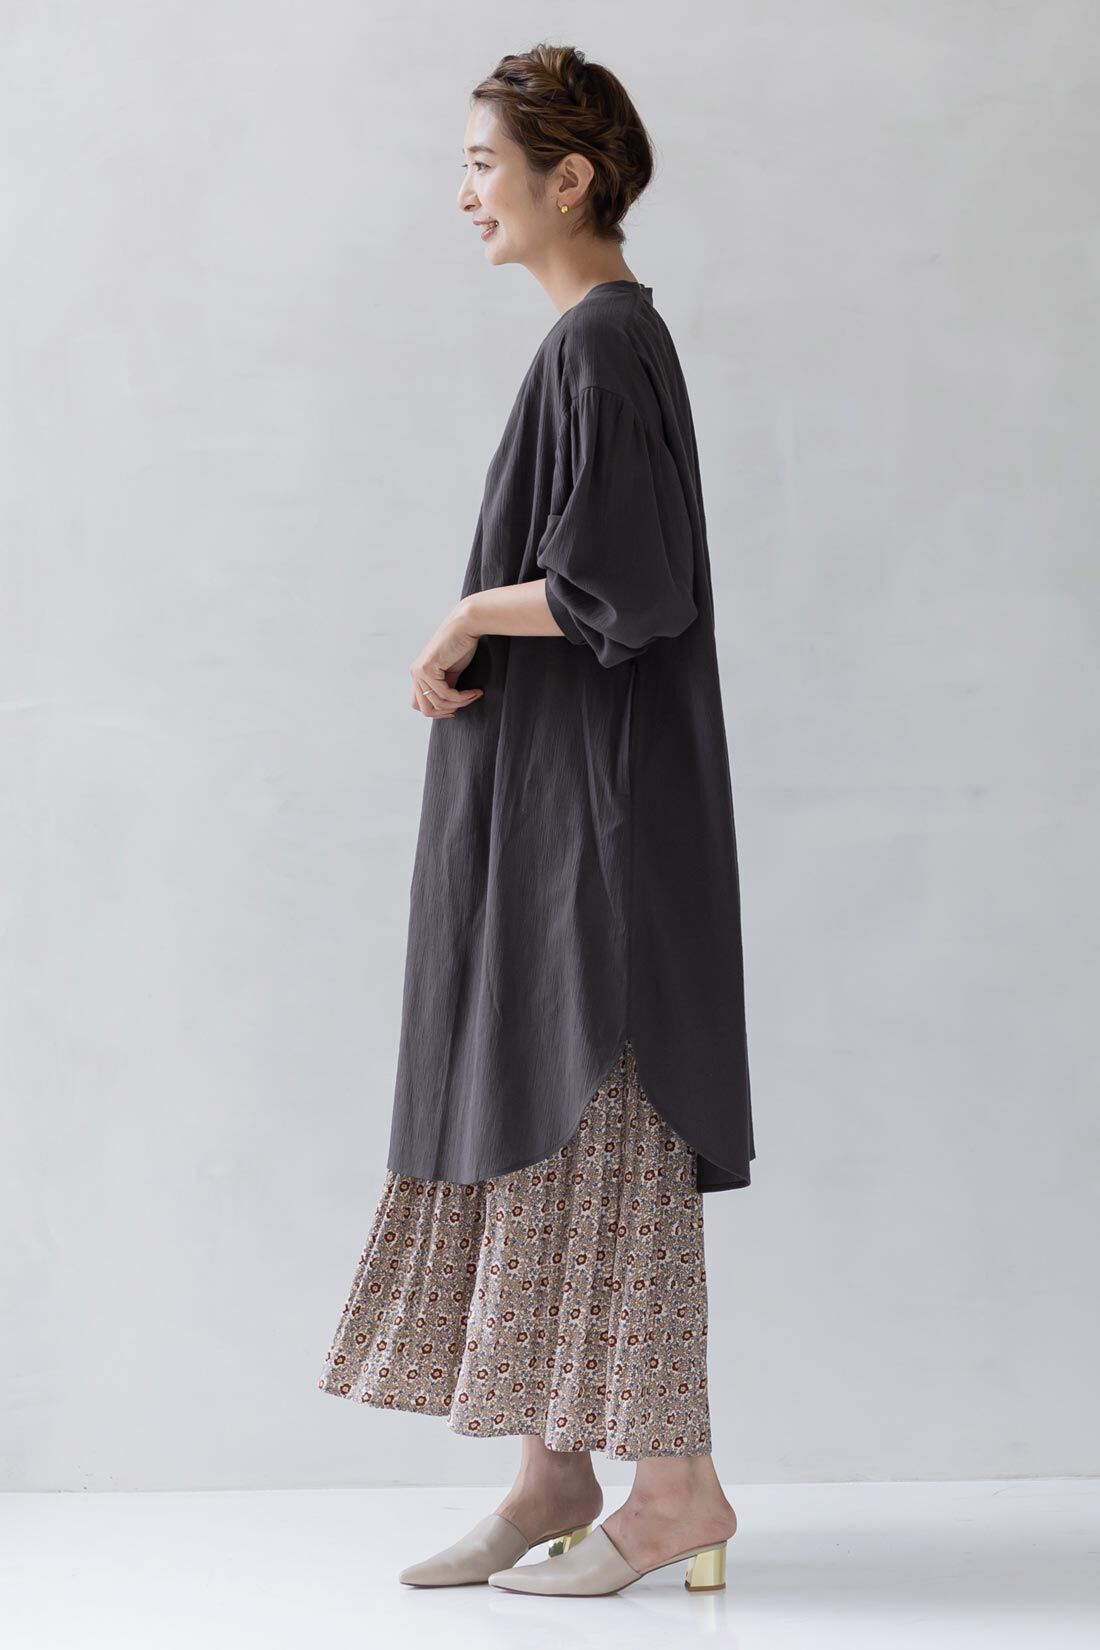 フェリシモMama|Moredde　マタニティから産後も使える　楊柳素材が心地いいチュニックパジャマ〈チャコールグレー〉|裾の長さは前後差をつけてあり、こなれて見えます。